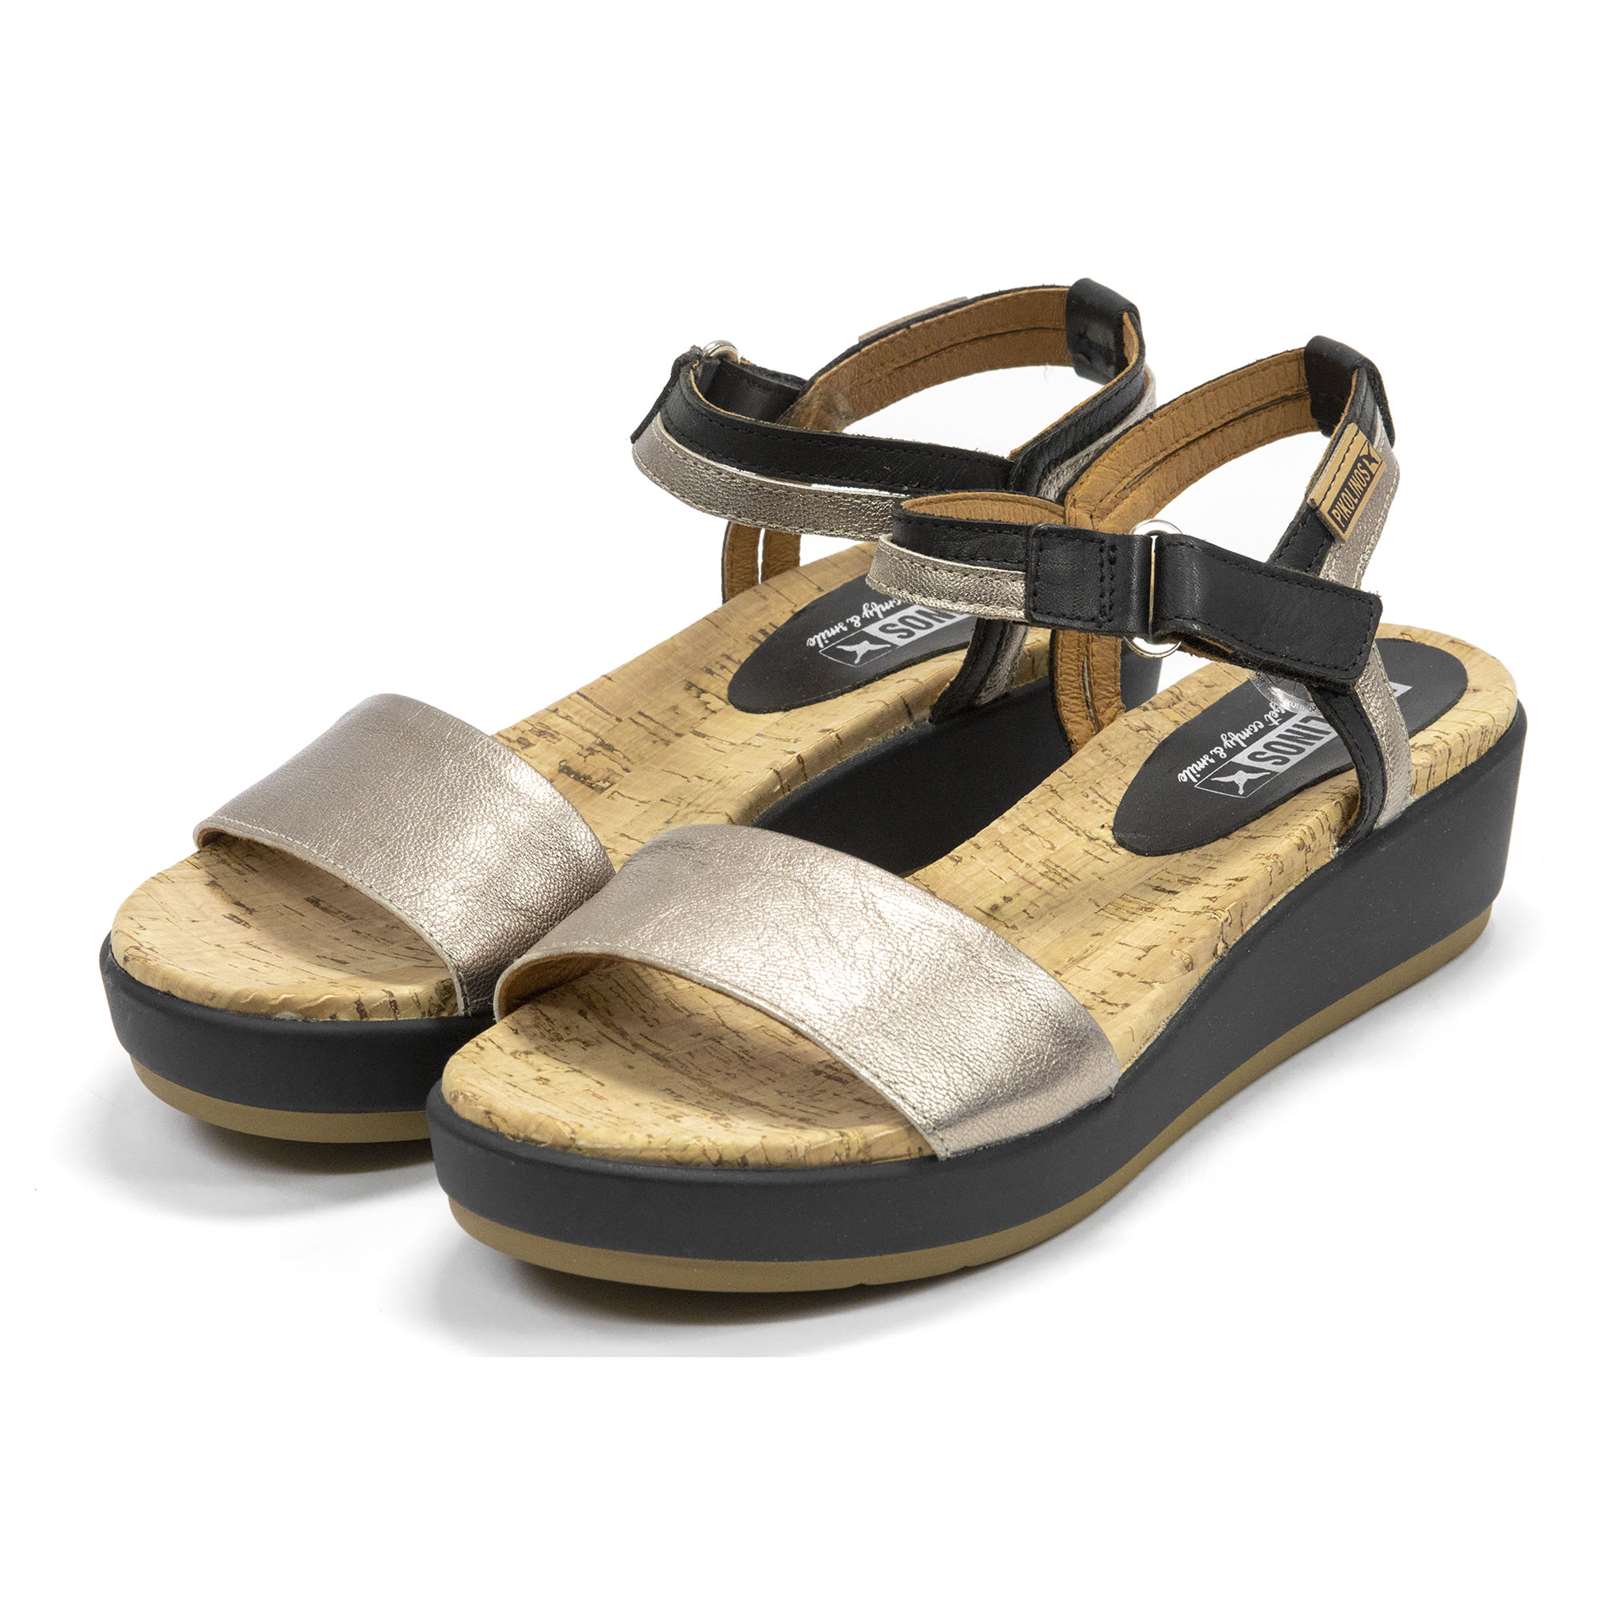 Pikolinos Women Mykonos Wedge Sandals